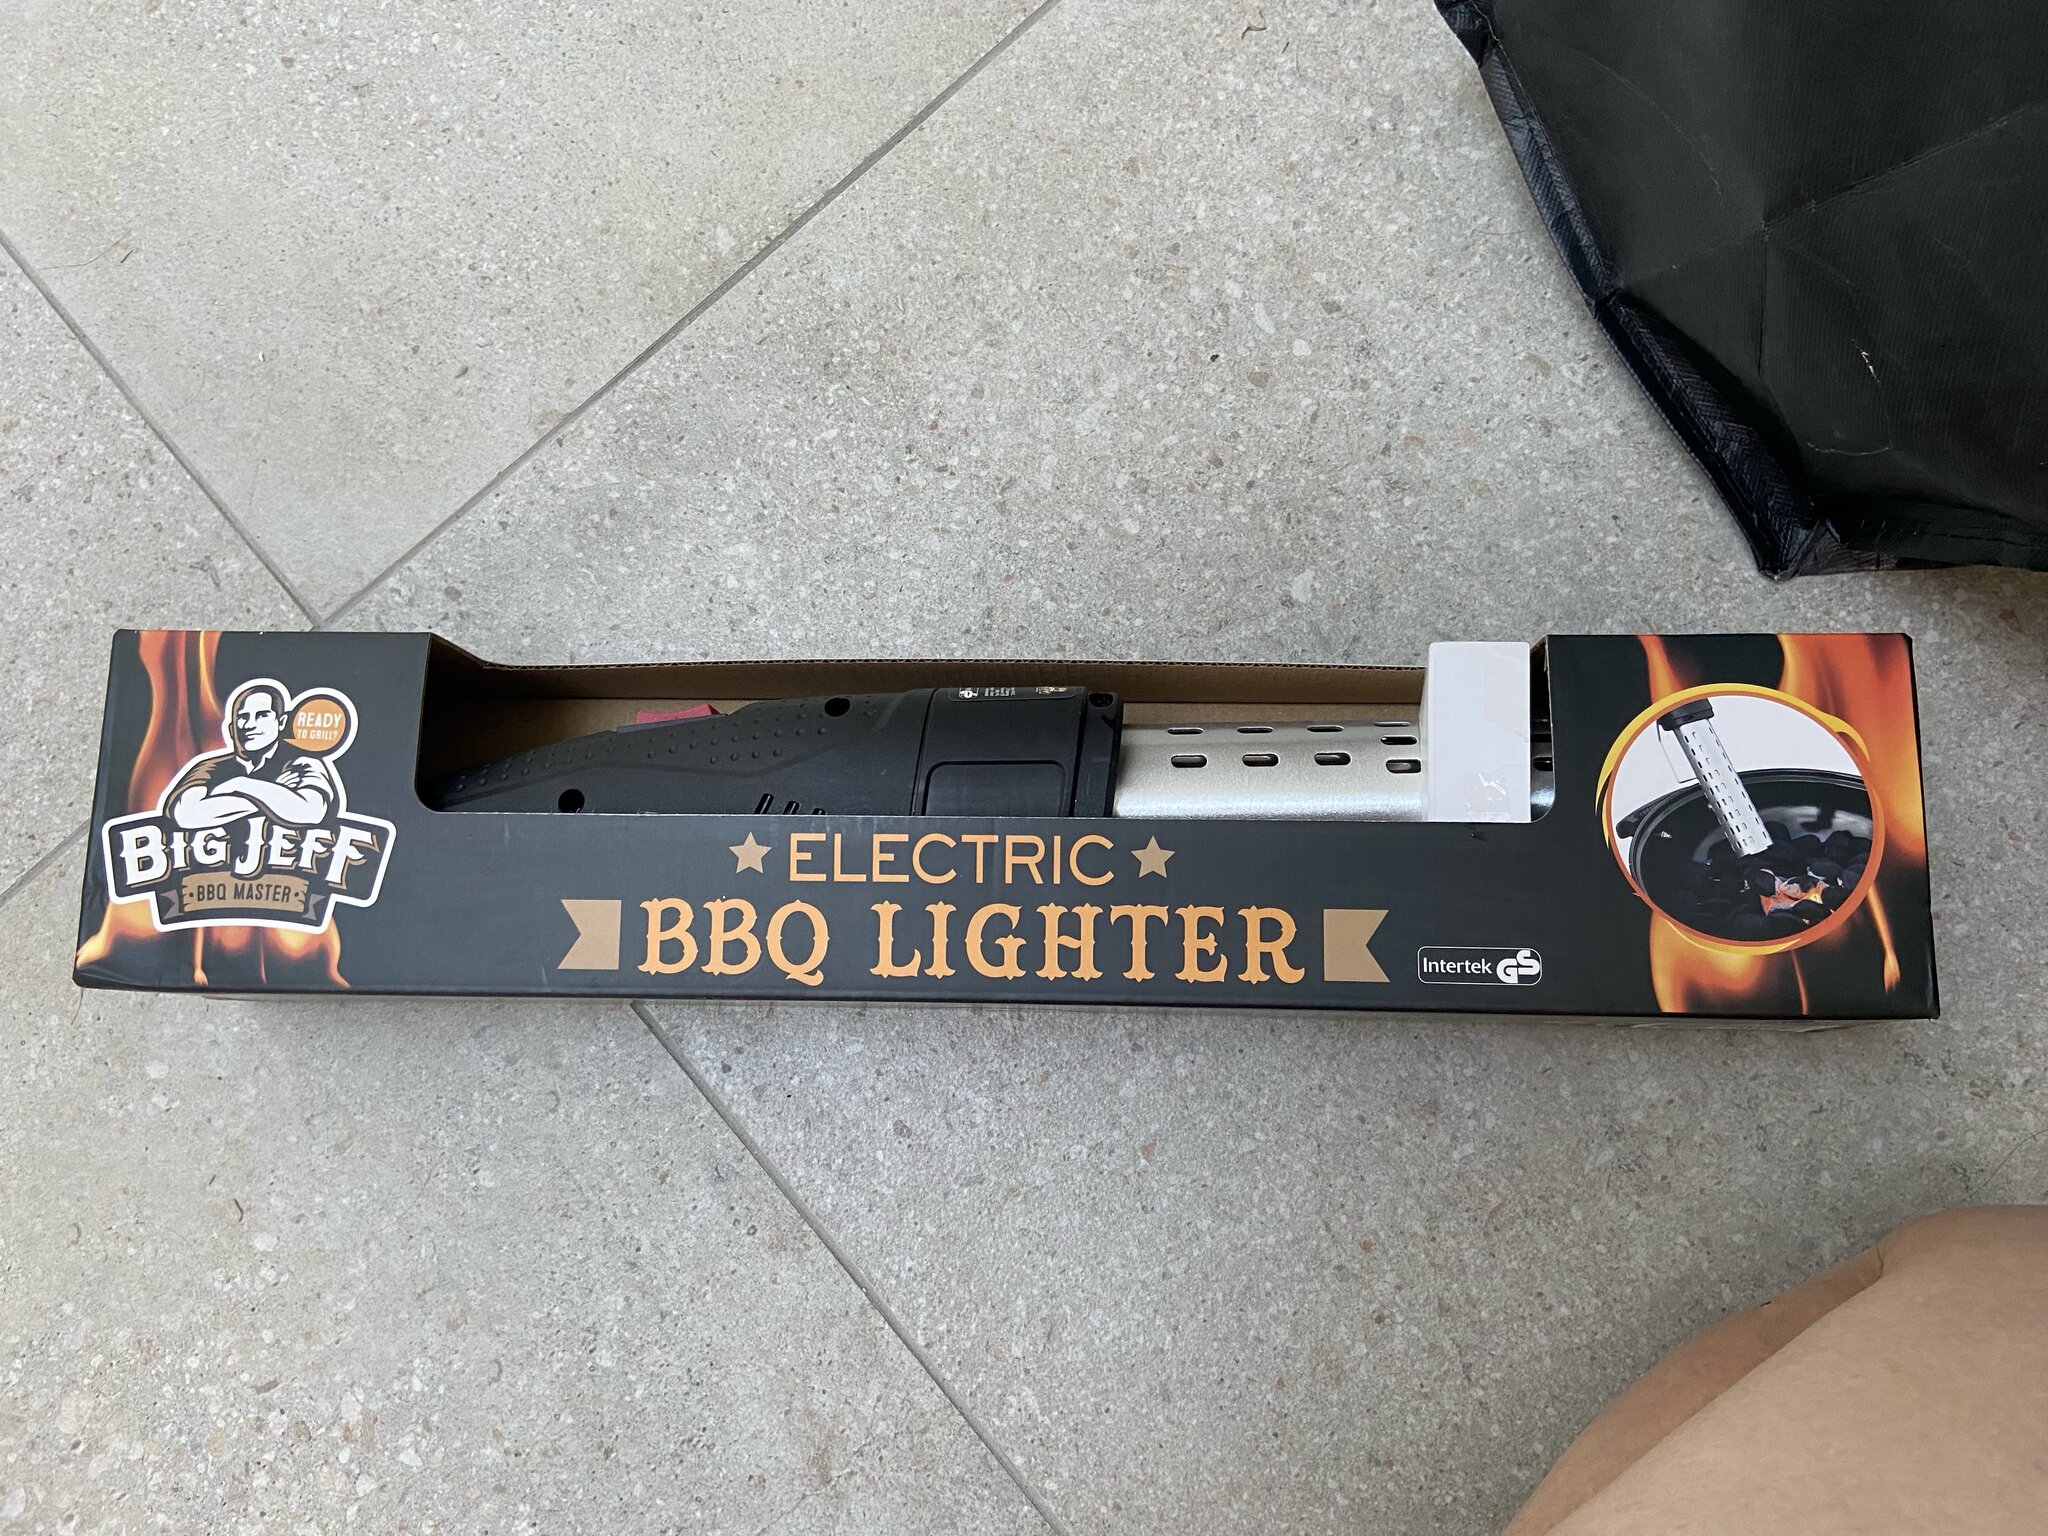 Big Jeff Bbq Lighter Action BBQ lighter, iemand ervaring mee?| Pagina 2 | Het BBQ Genootschap